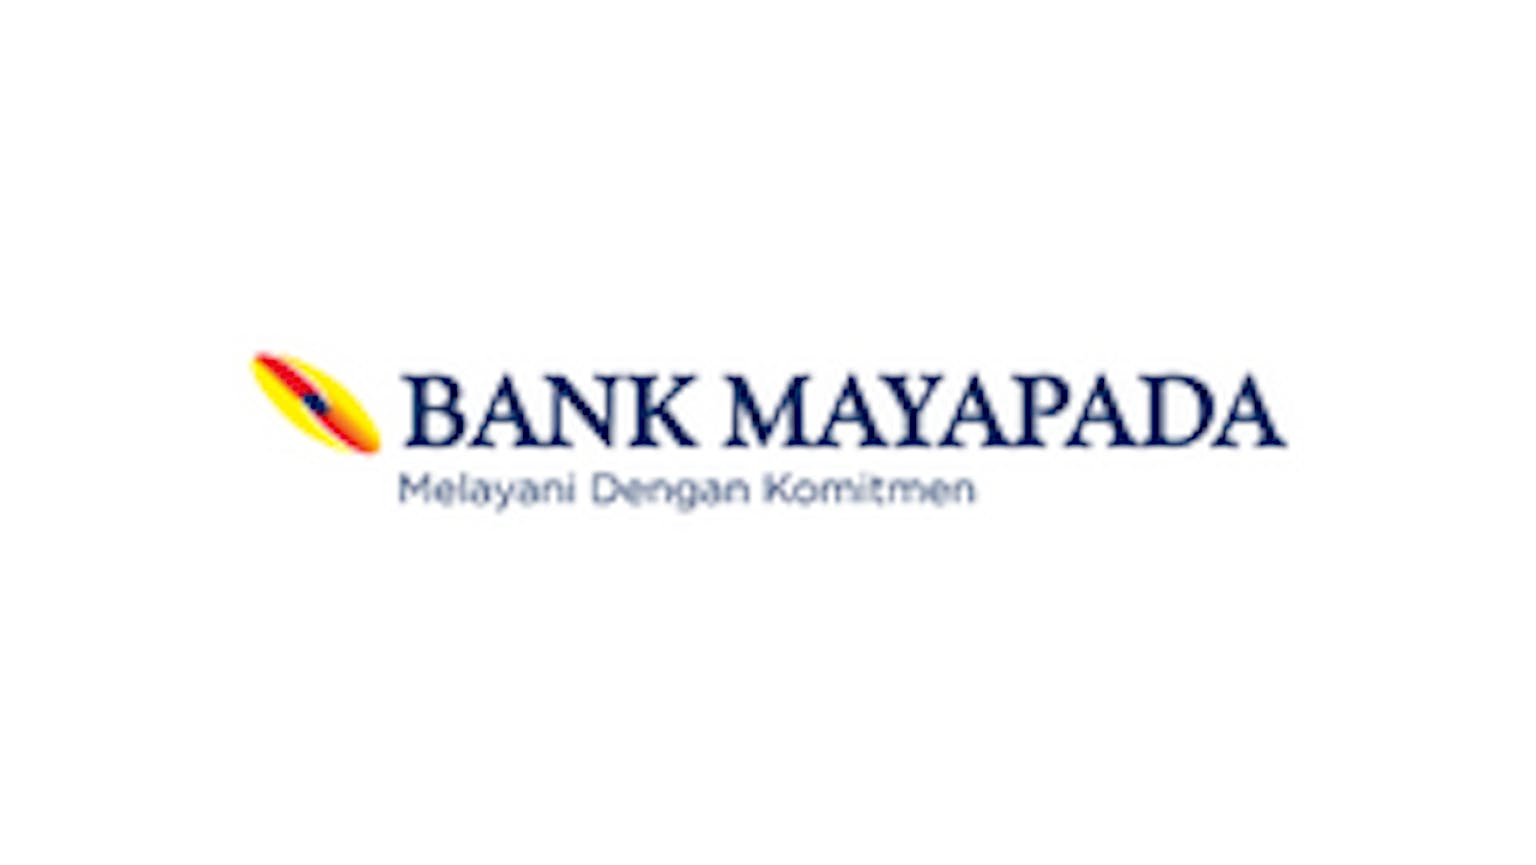 MyDepo Bank Mayapada